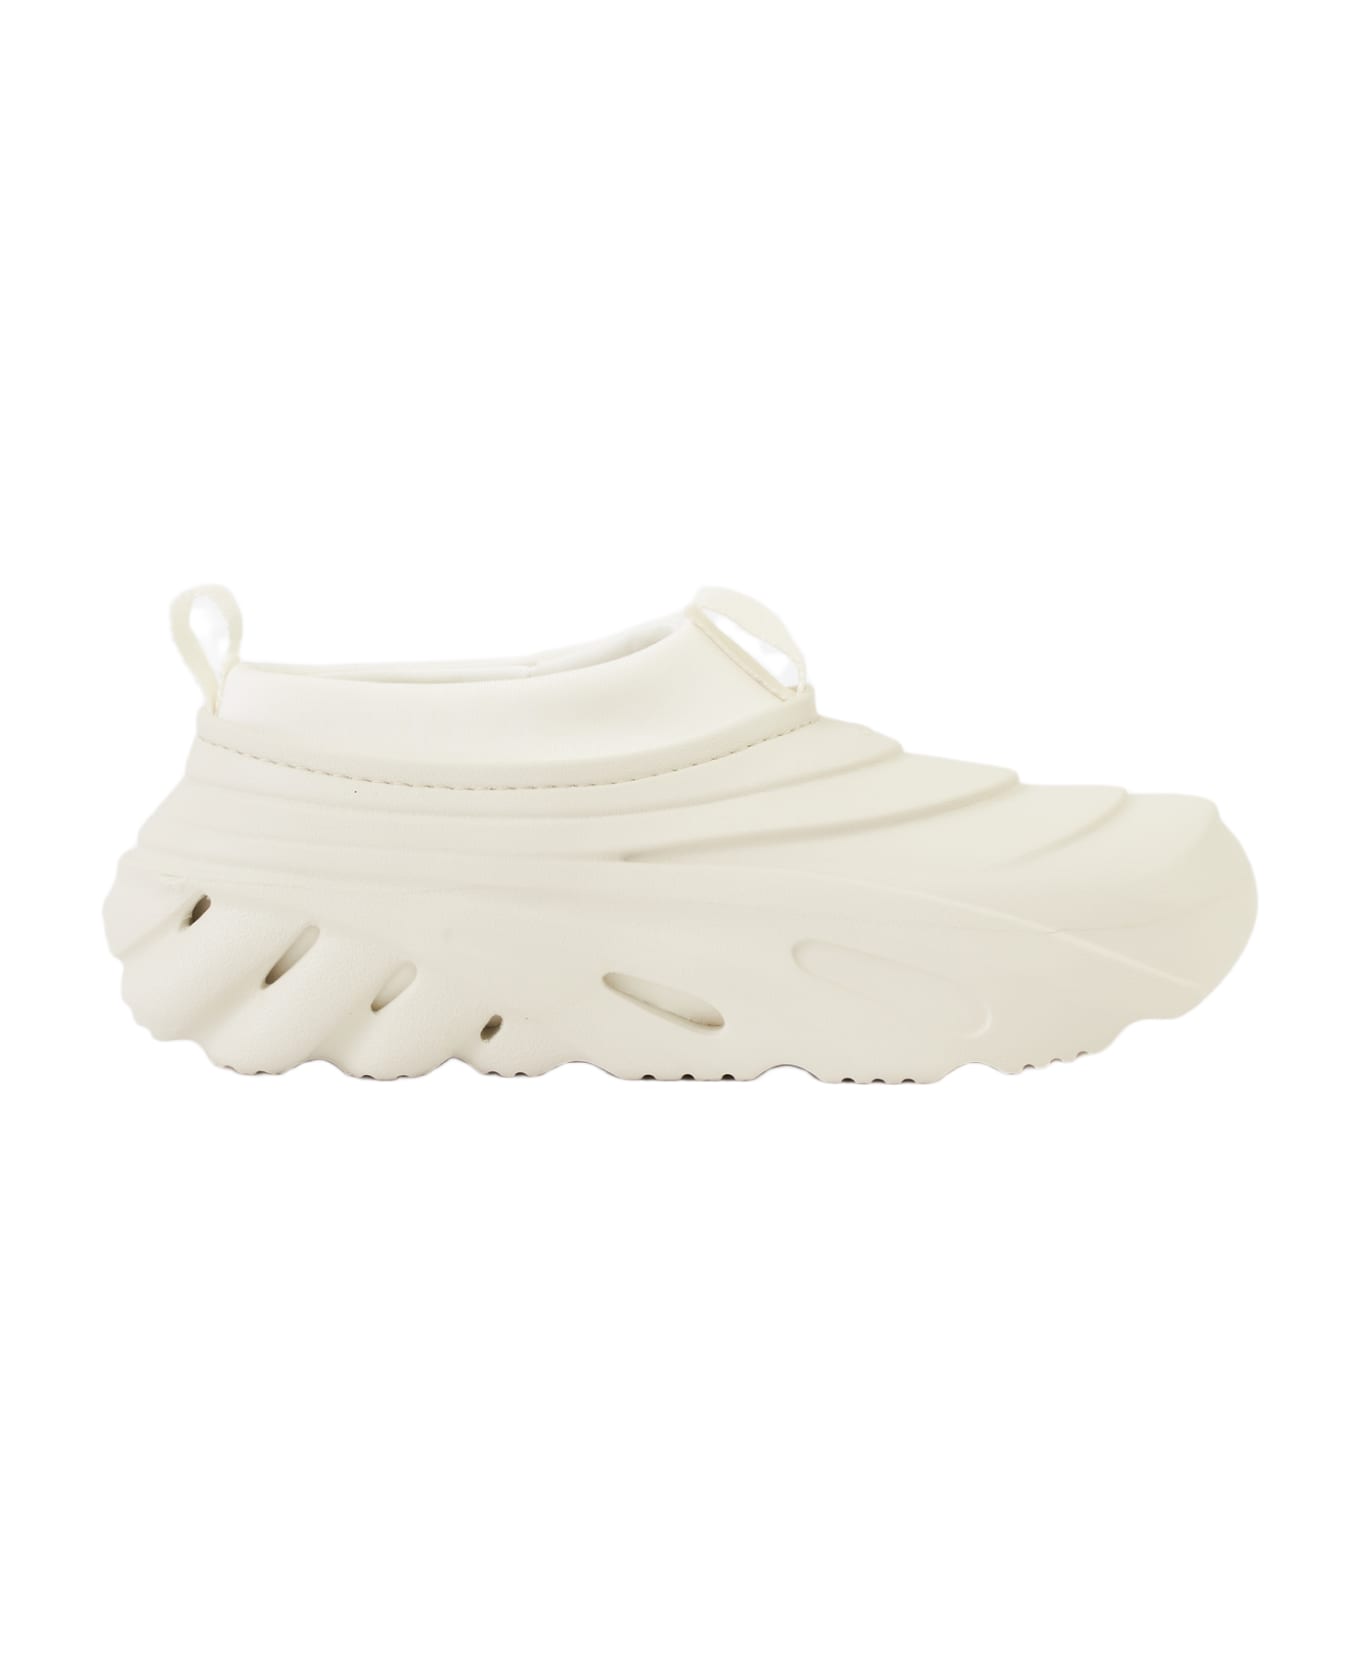 Crocs Echo Storm Shoes - white